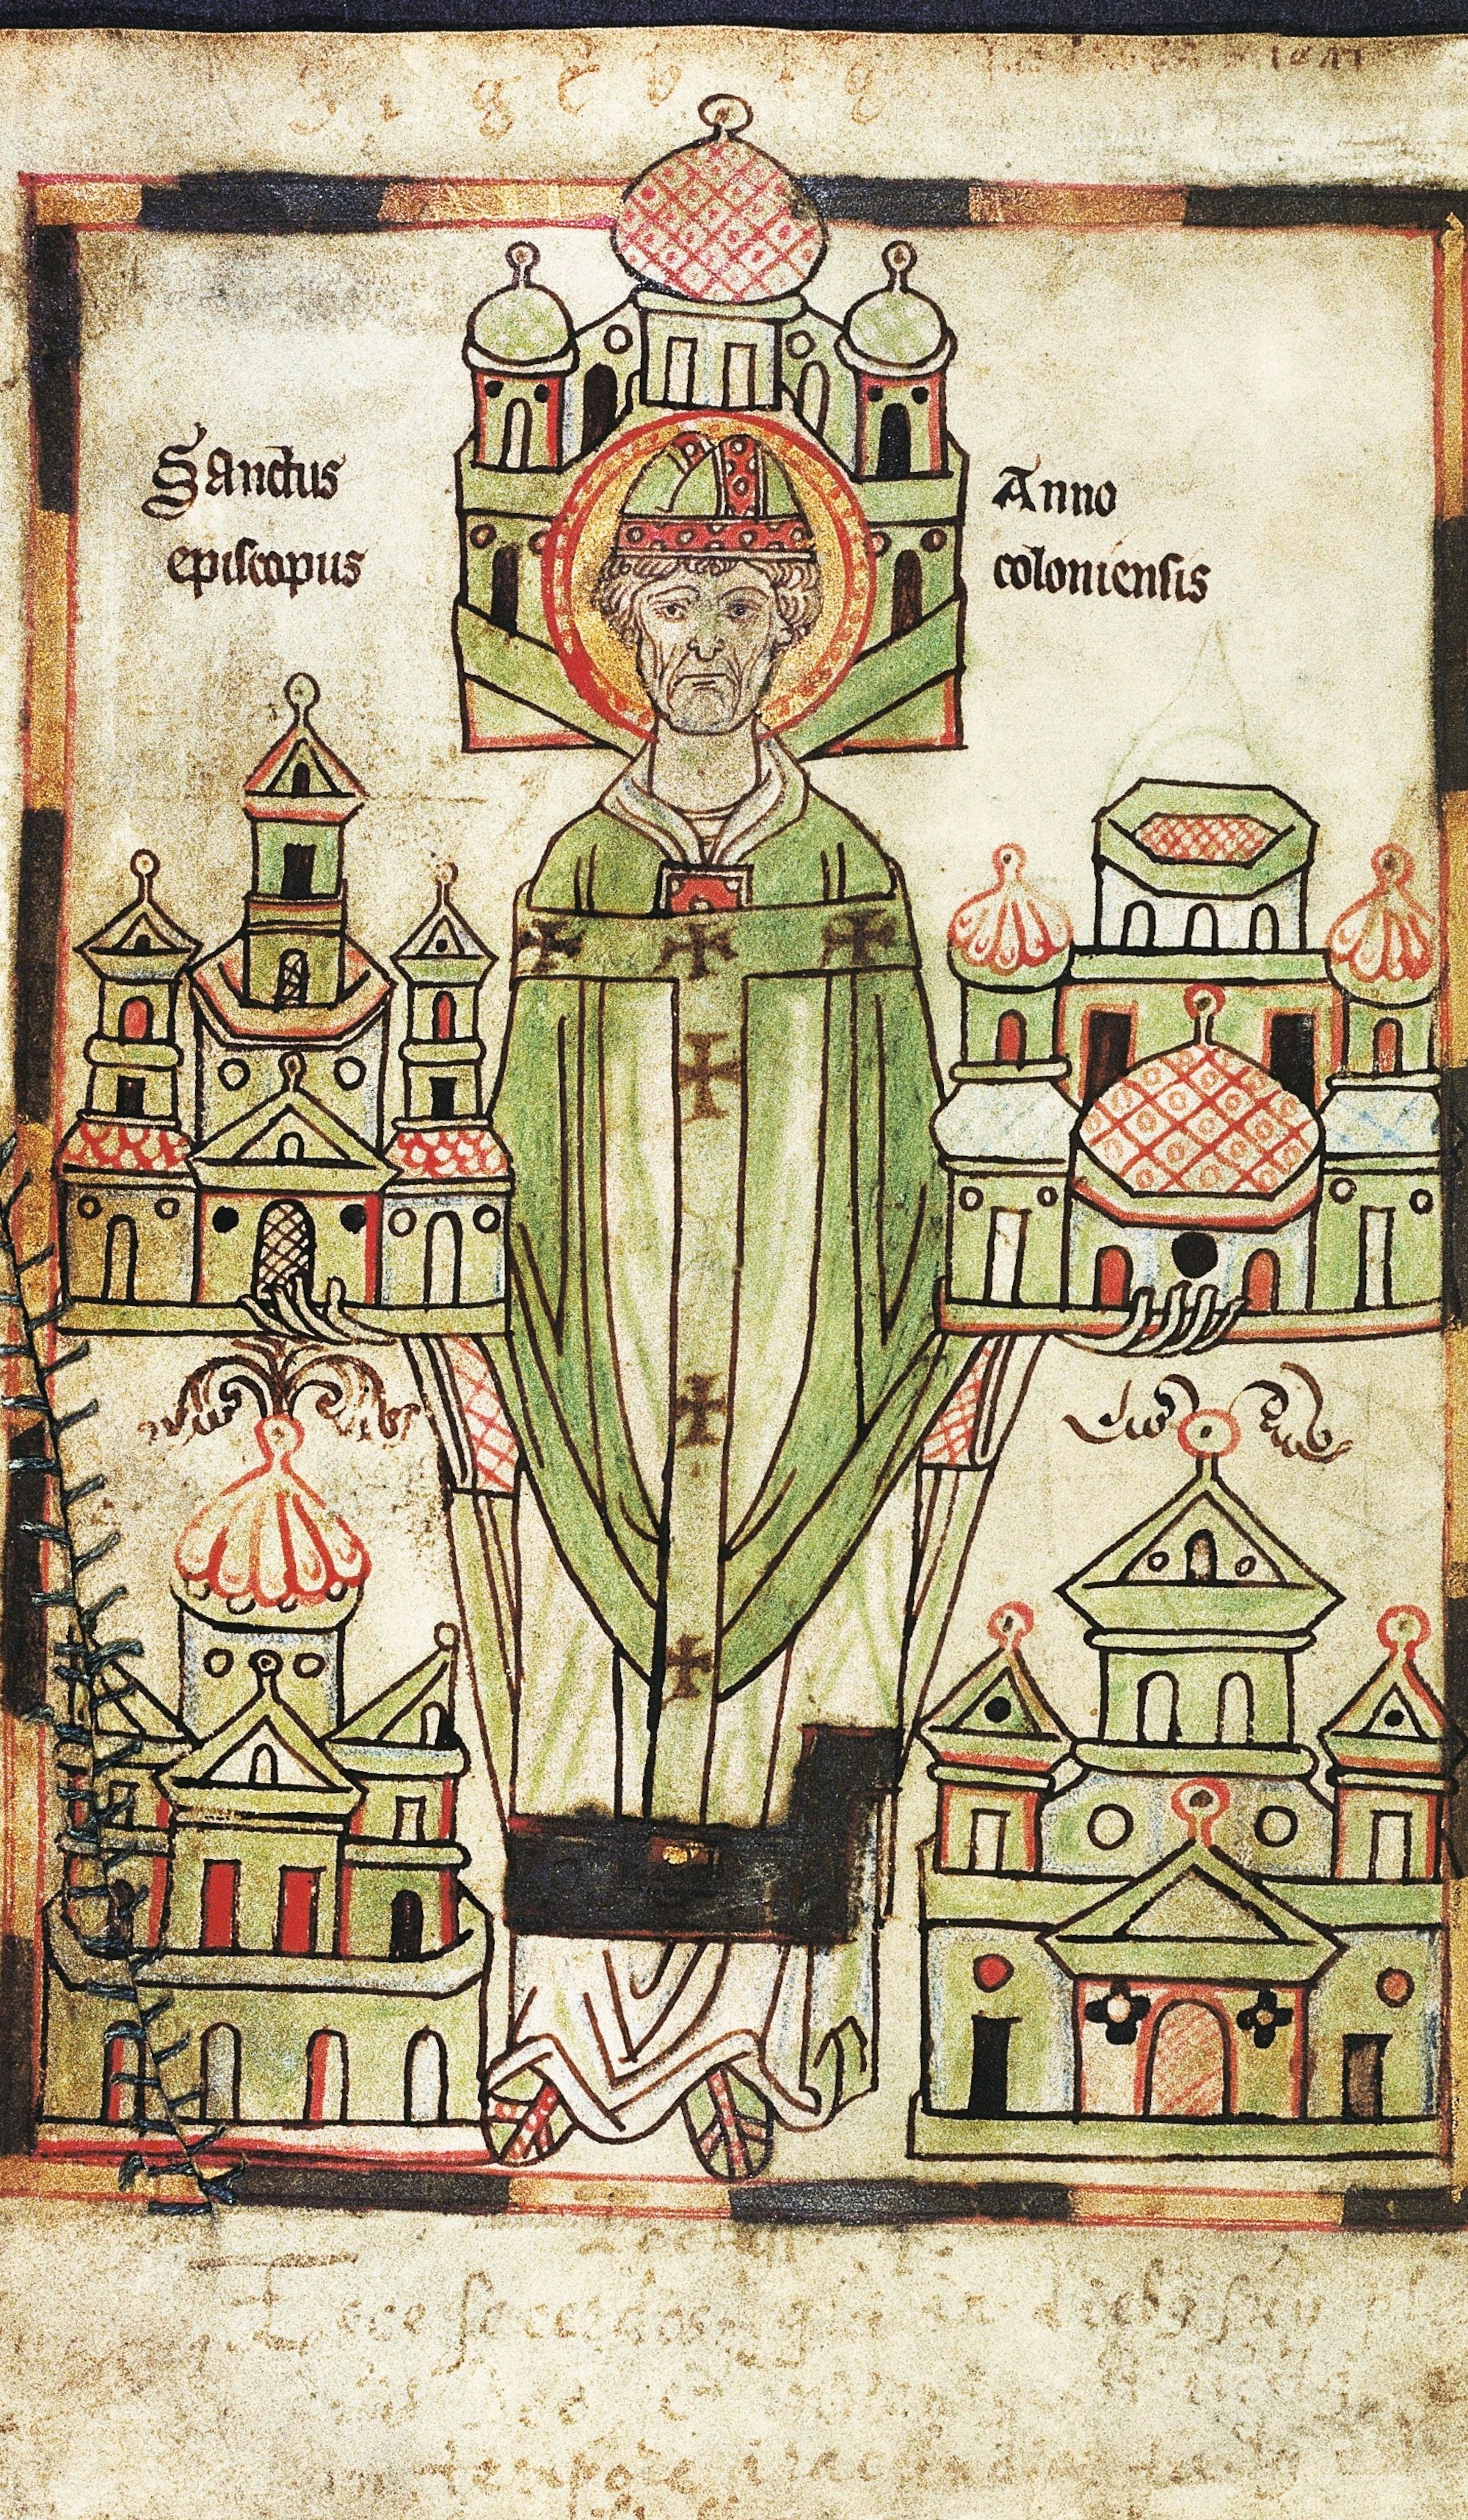 Die Federzeichnung von Erzbischof Anno II aus der Handschrift Vita Annonis minor zeigt den Bischof mit Modellen der von ihm gegründeten Kirchen und Klöster